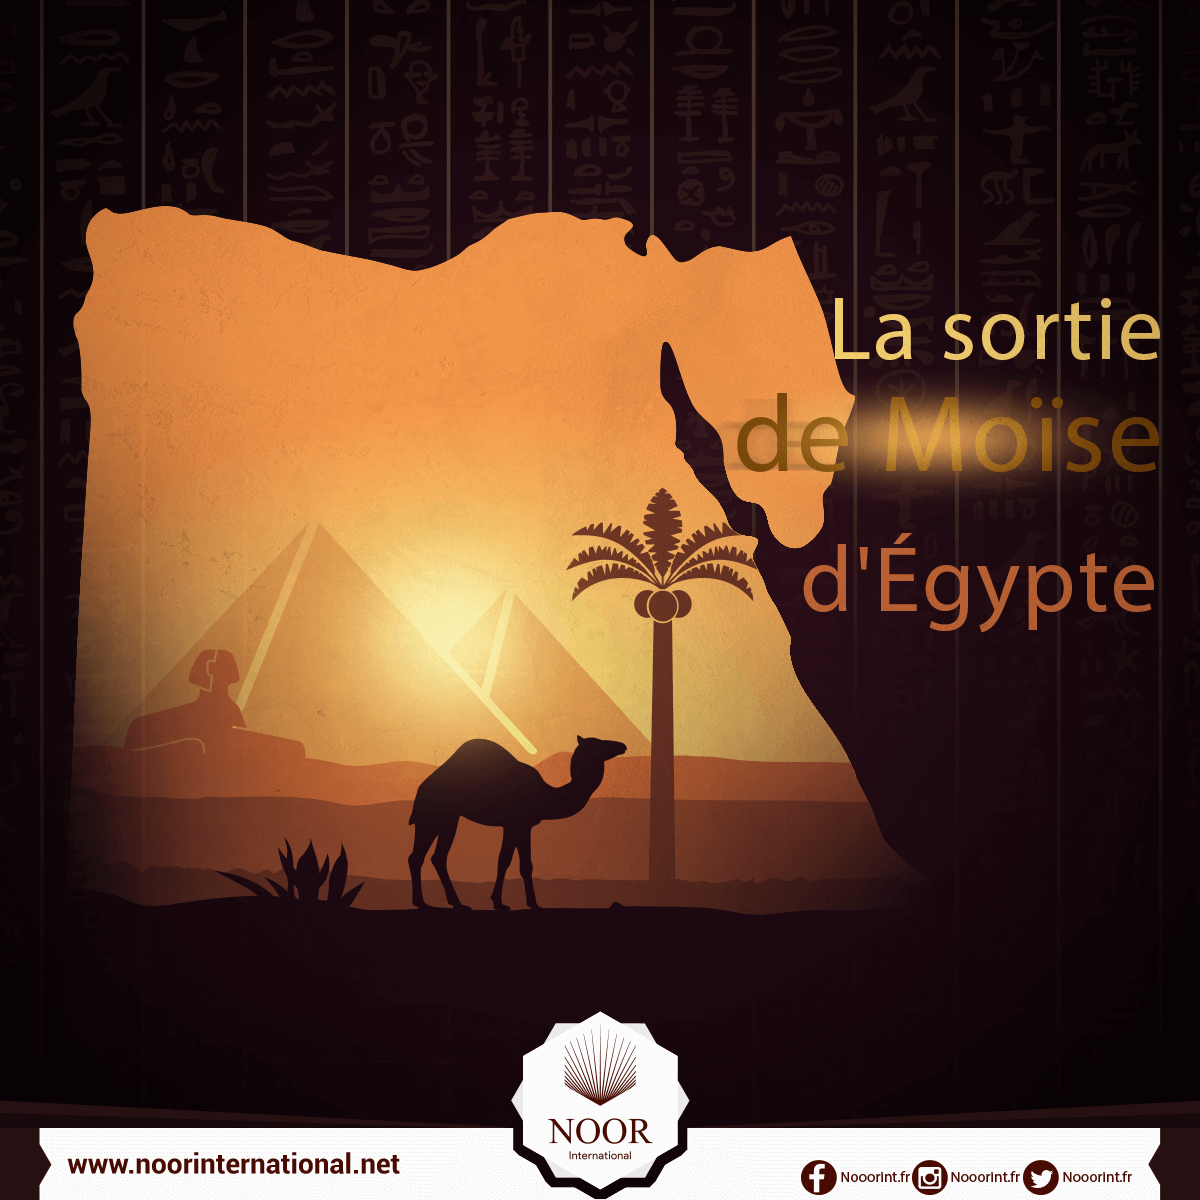 La sortie de Moïse d'Égypte